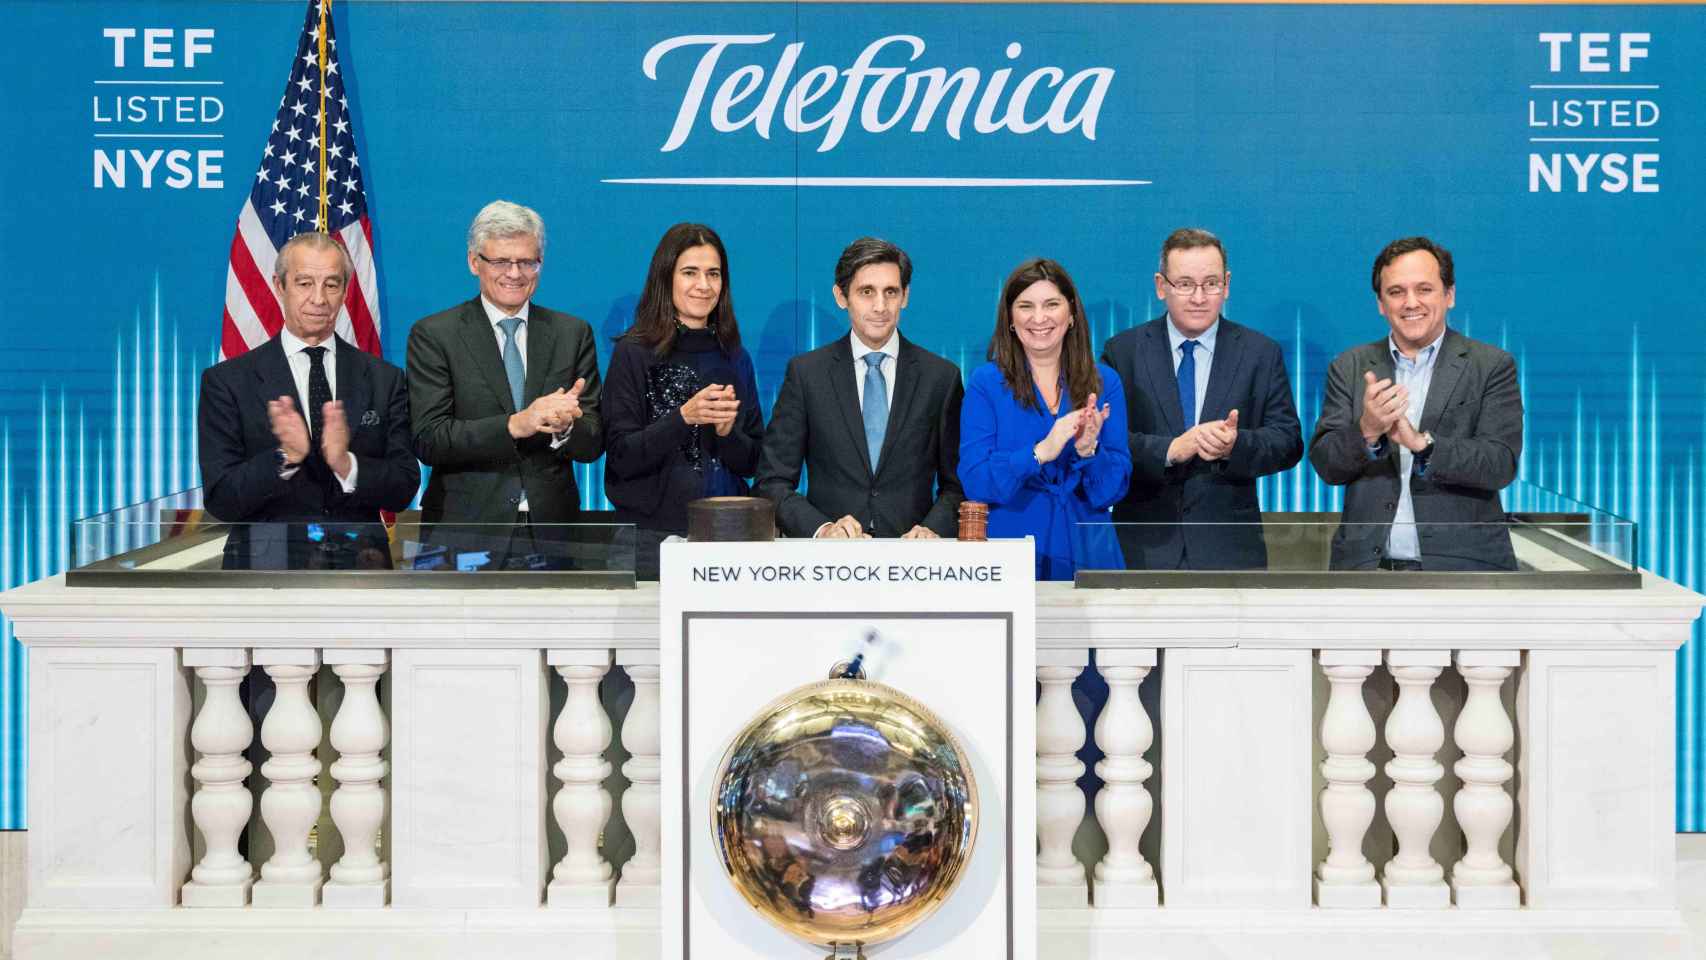 El presidente de Telefónica, José María Álvarez-Pallete, en el centro de la imagen, en una ceremonia de apertura de sesión en la Bolsa de Nueva York / EP